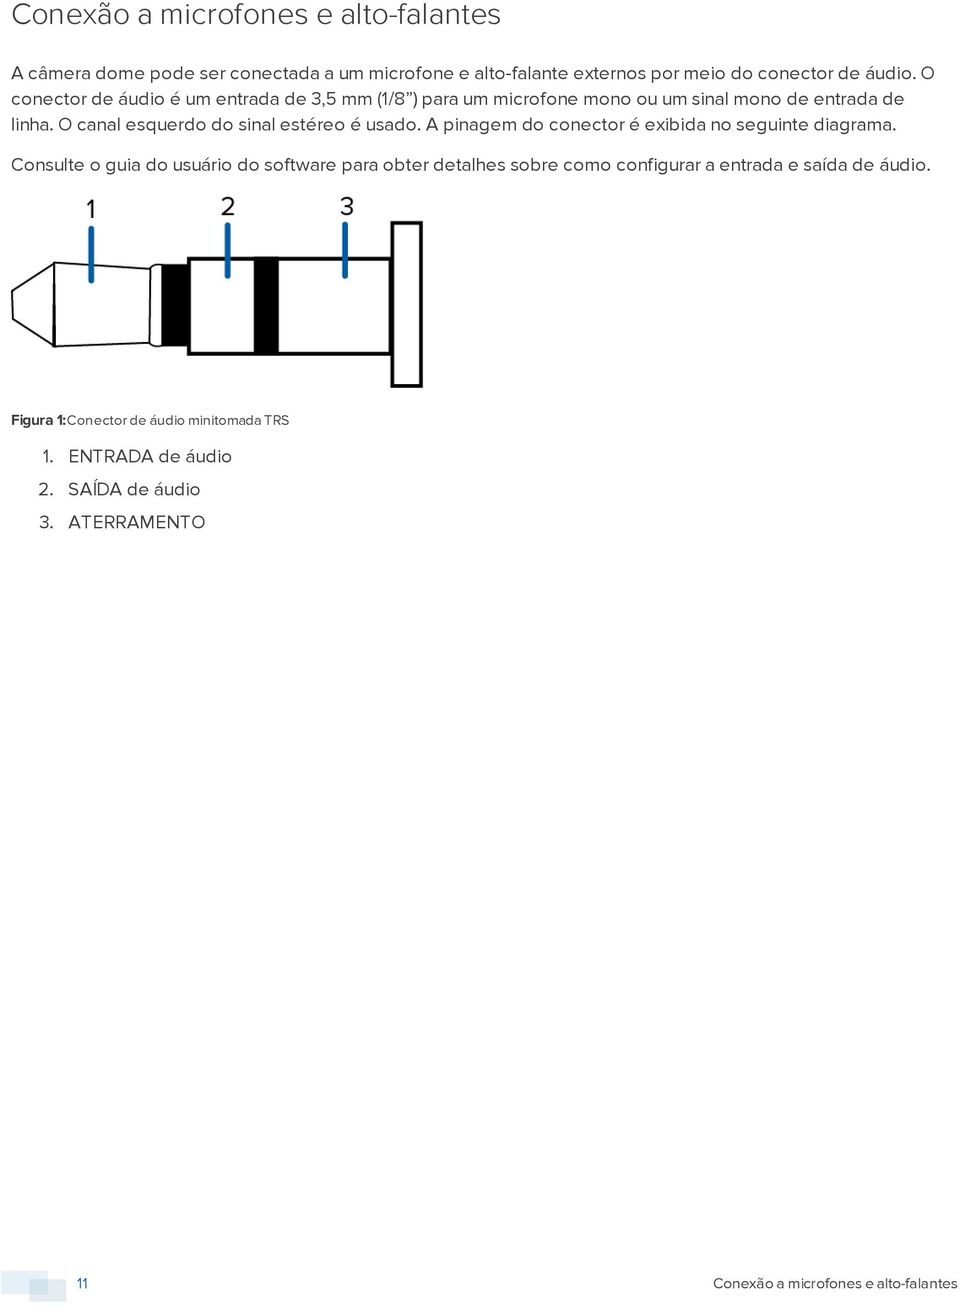 O canal esquerdo do sinal estéreo é usado. A pinagem do conector é exibida no seguinte diagrama.